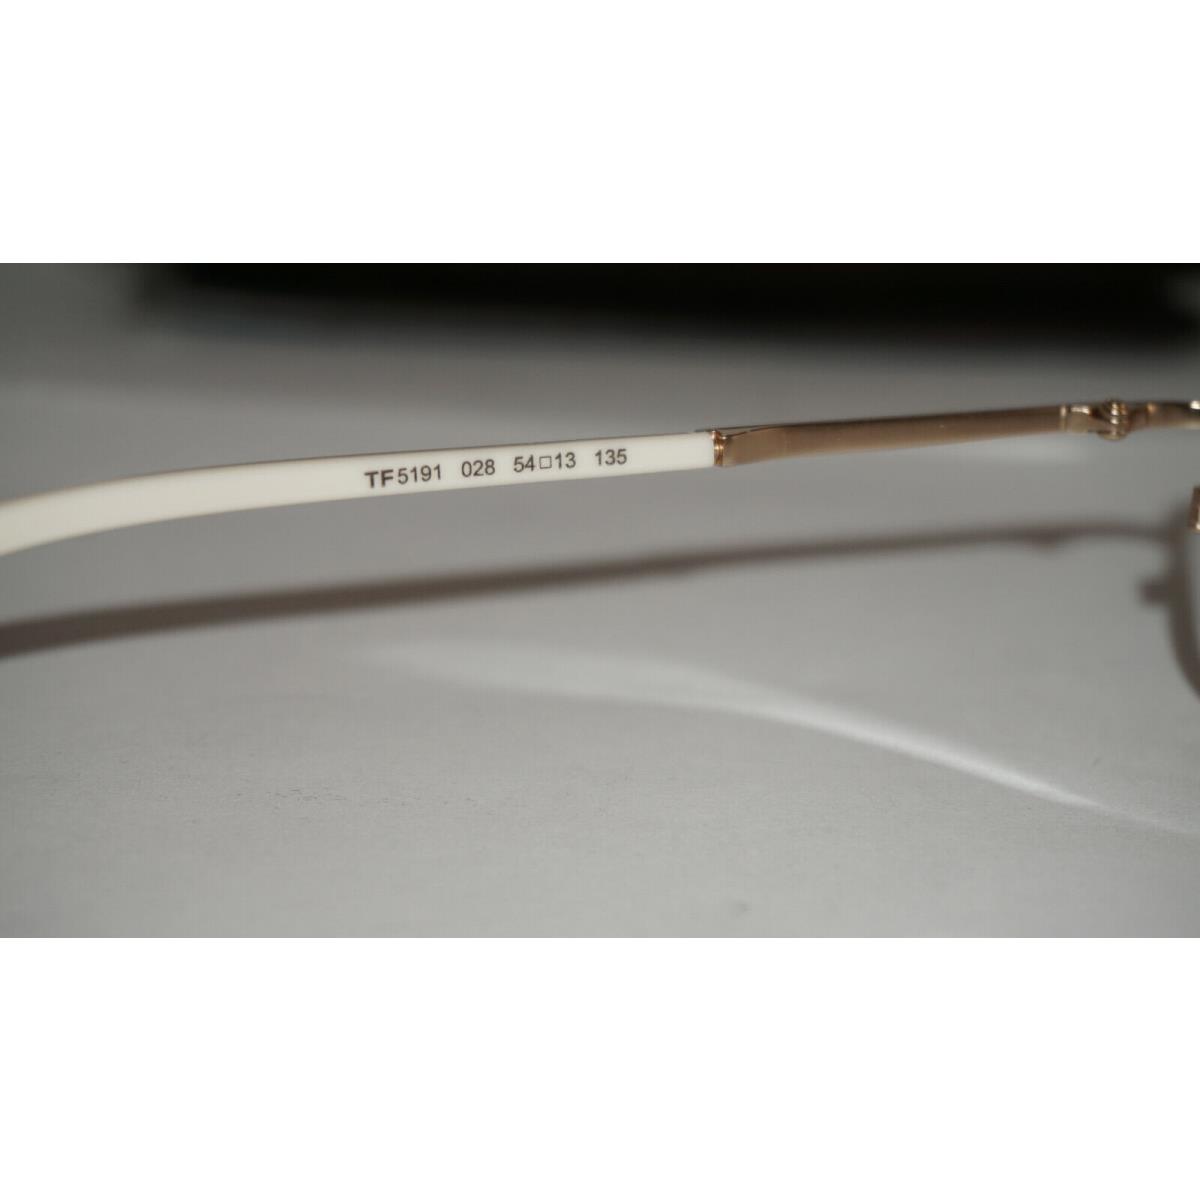 Tom Ford eyeglasses  - White Gold, Frame: White Gold TF5191 028 54 13 135 7